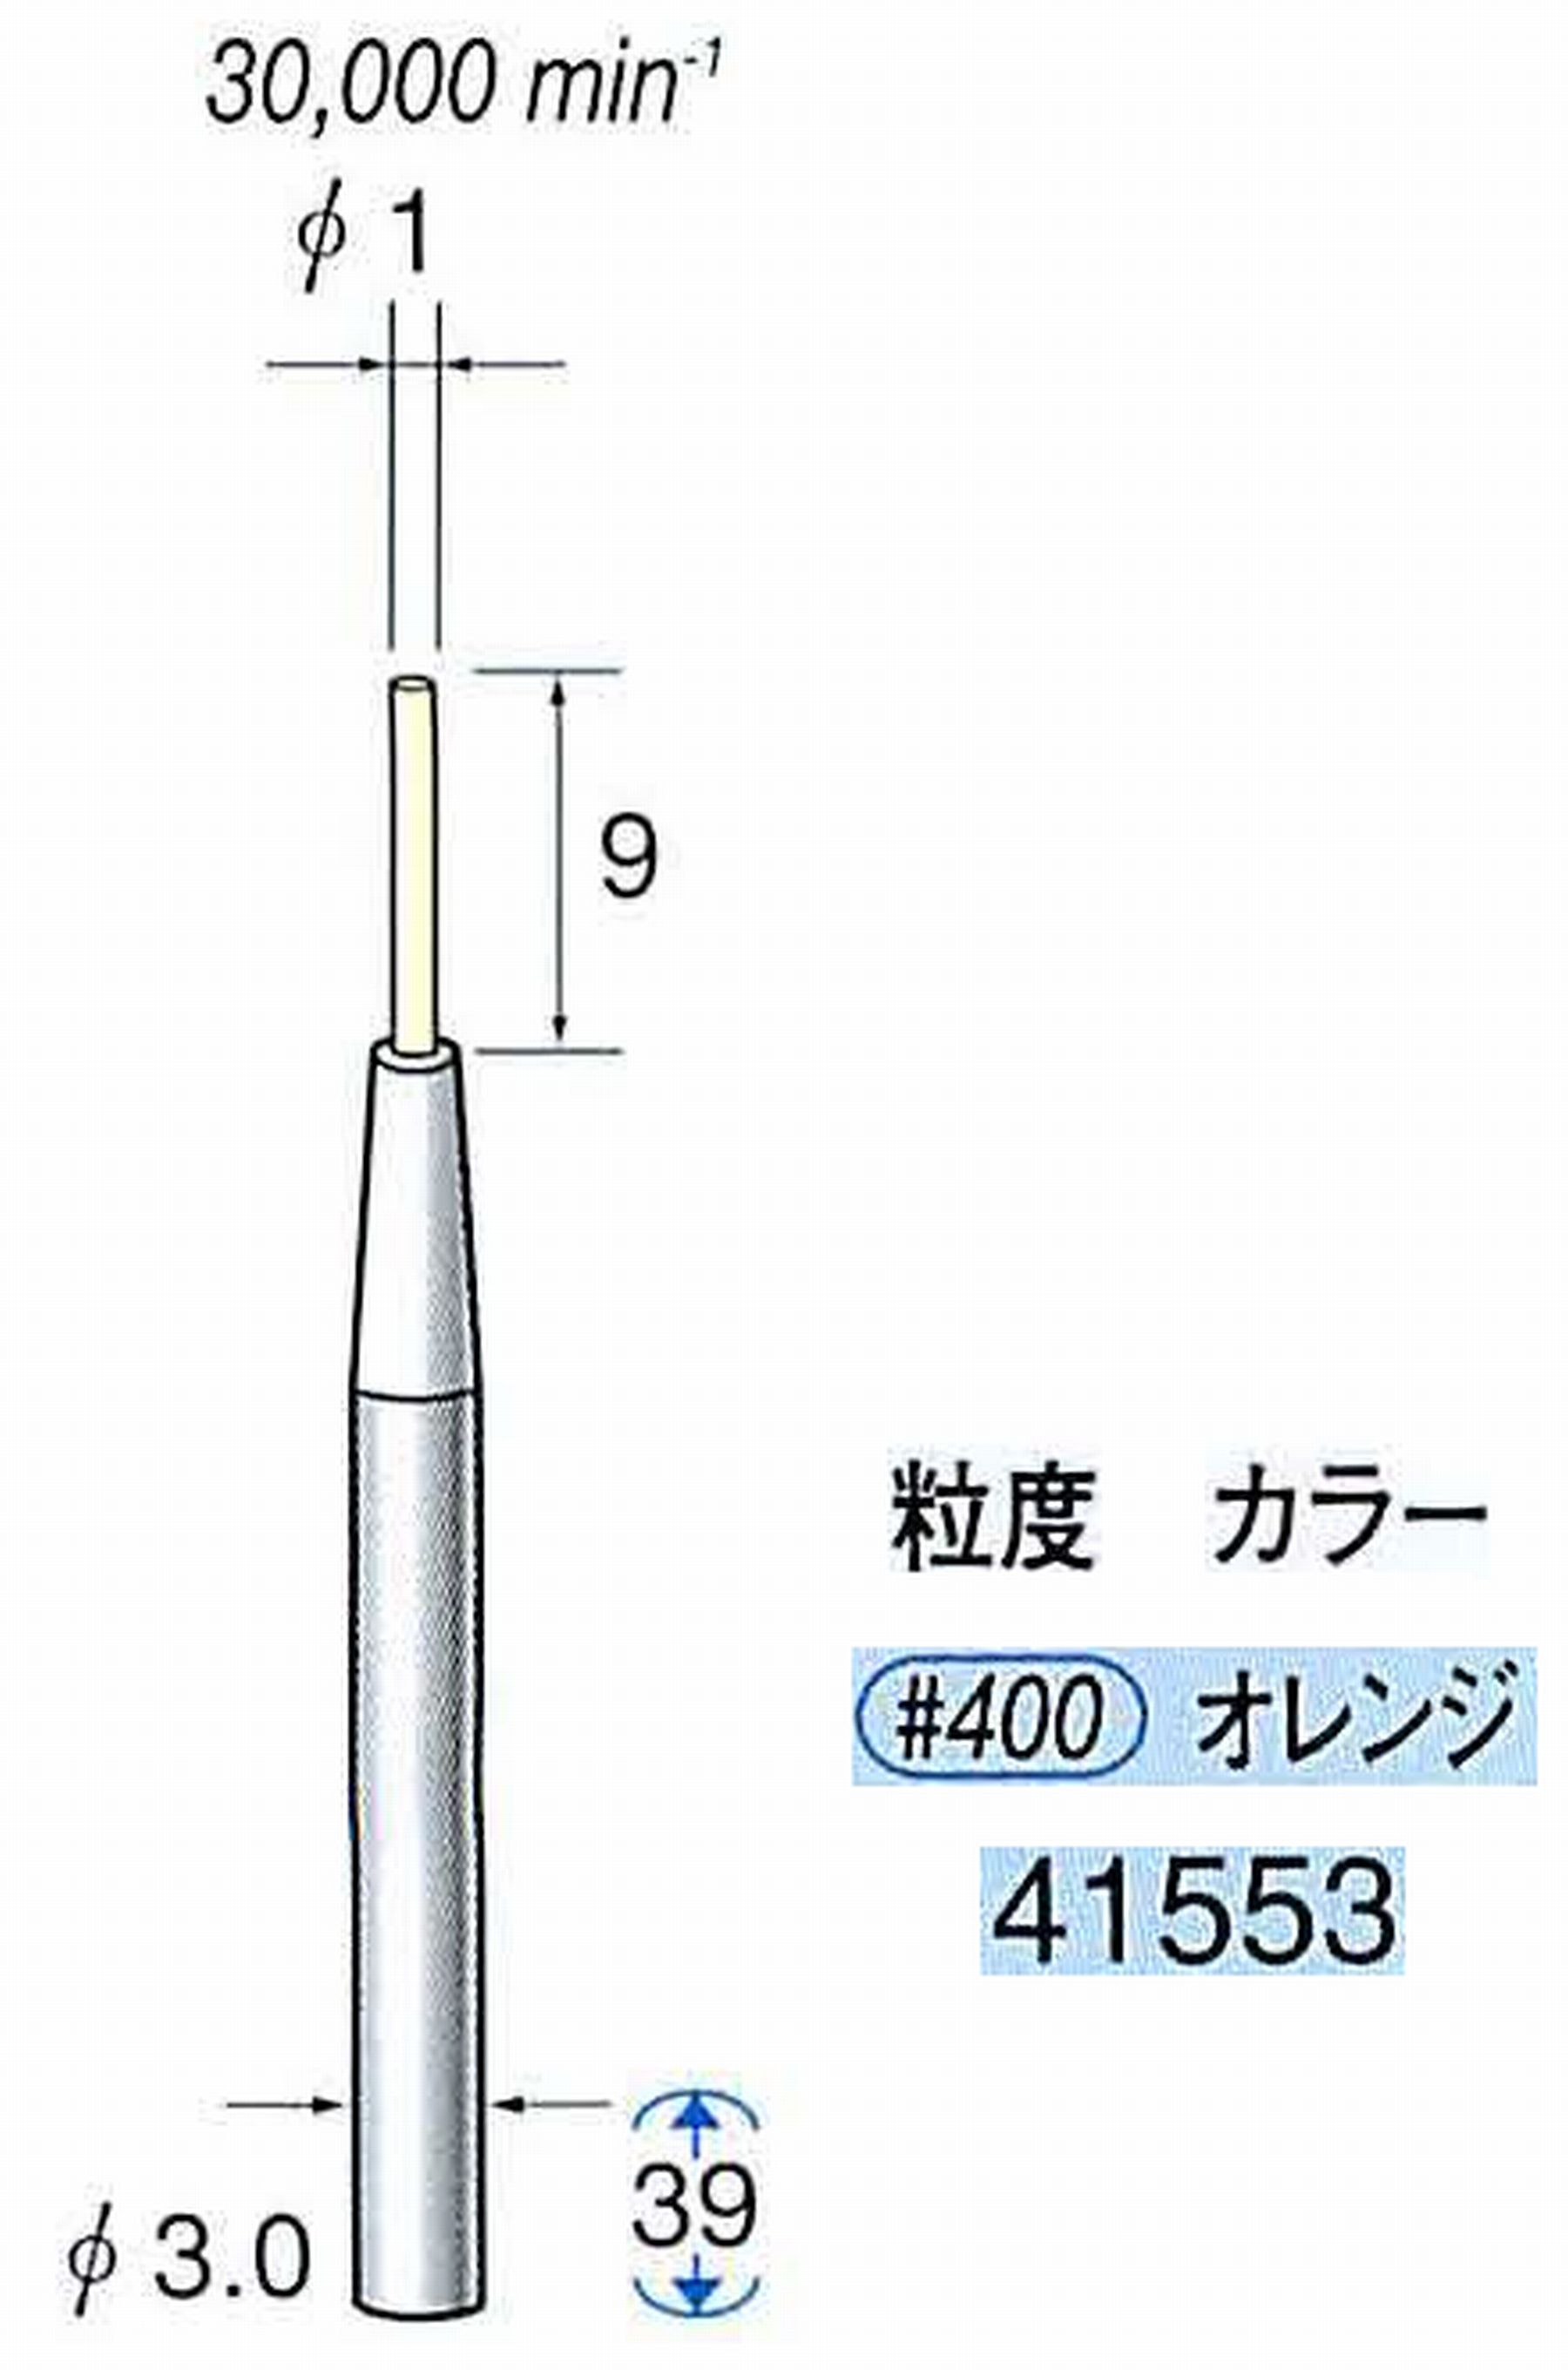 ナカニシ/NAKANISHI セラファイバー精密軸付砥石(カラー オレンジ) 軸径(シャンク) φ3.0mm 41553